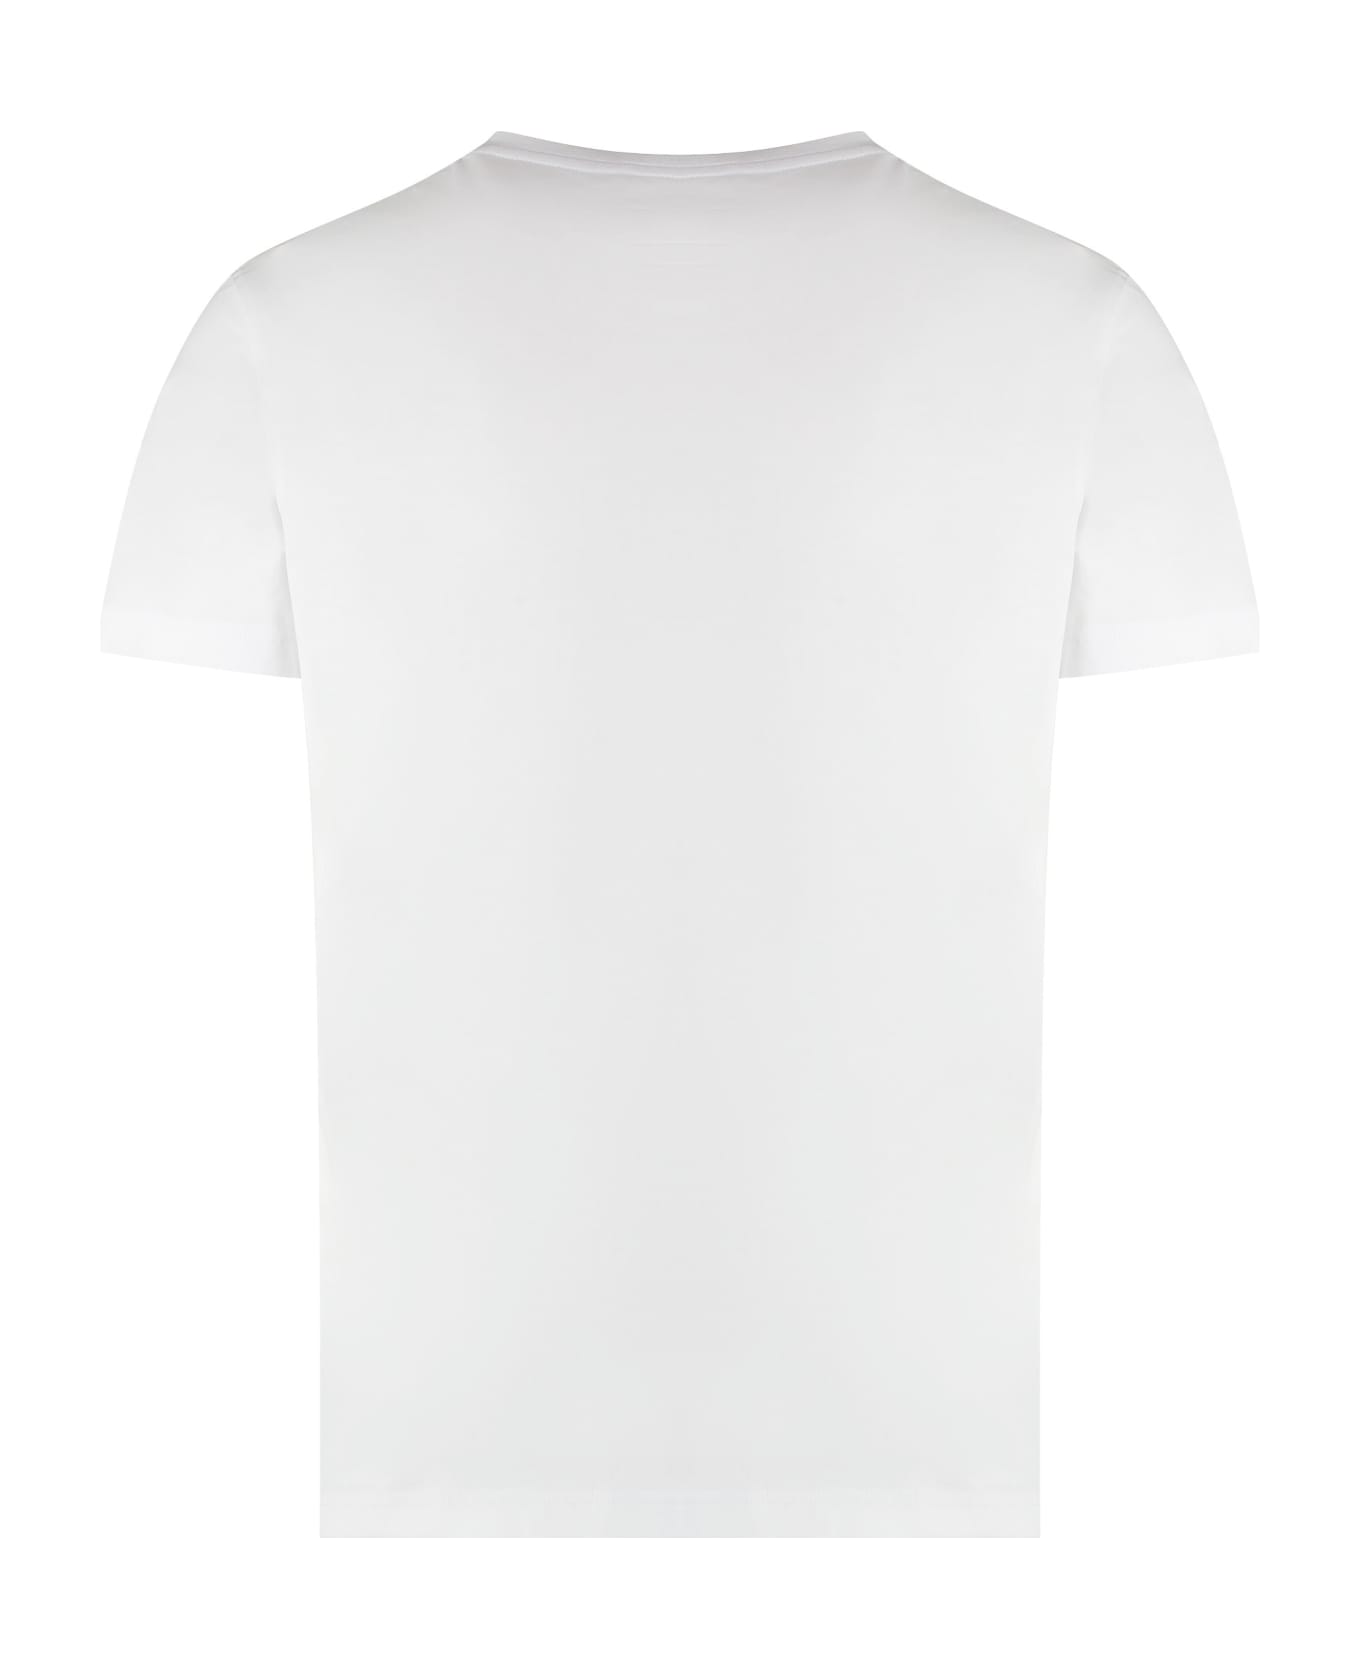 K-Way Edouard Cotton Crew-neck T-shirt - White